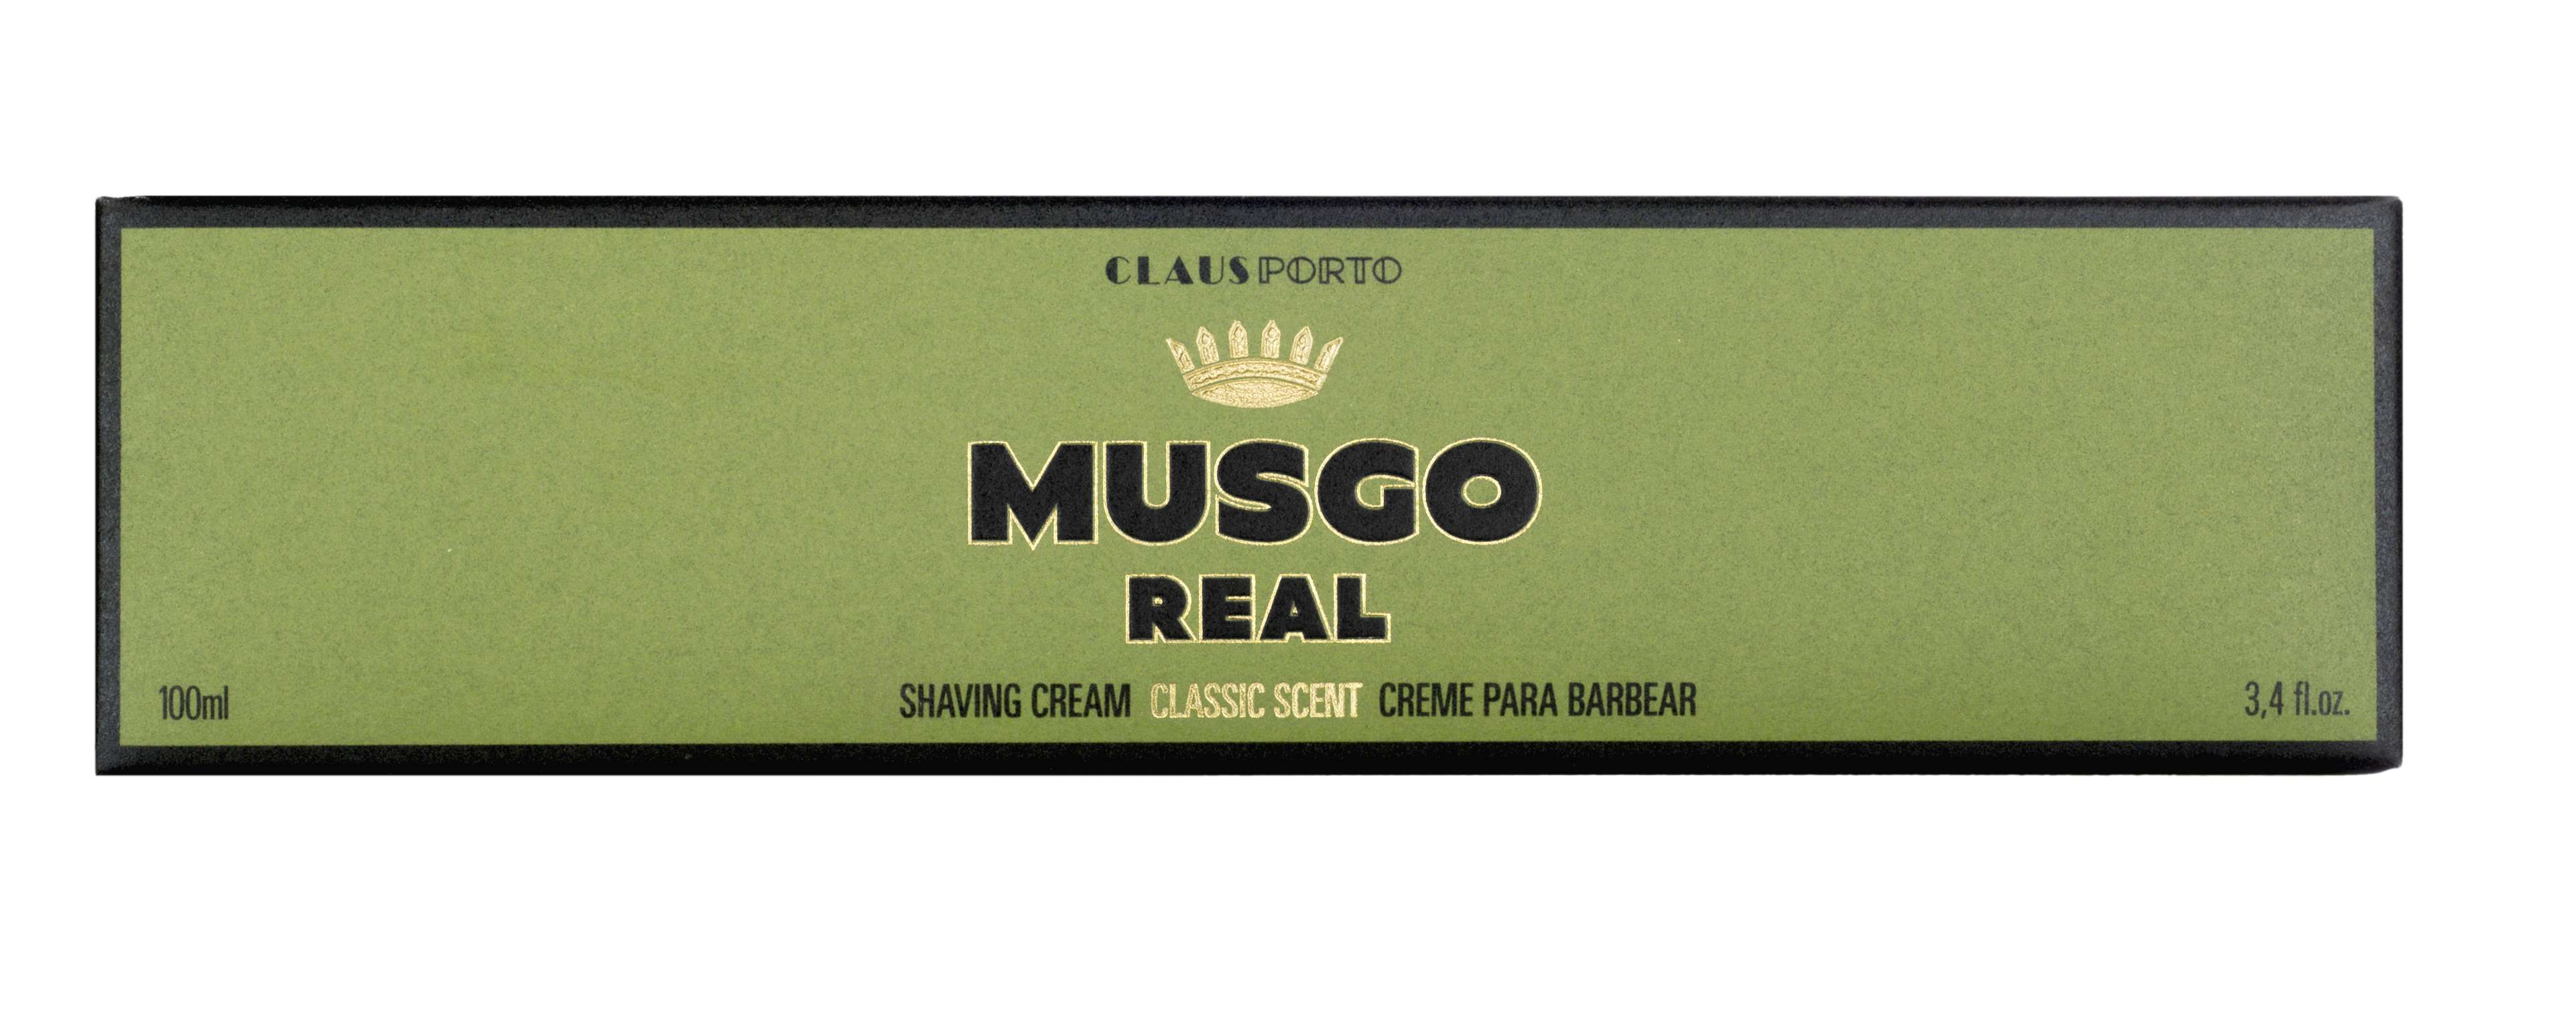 Musgo Real shaving cream, Classic Scent